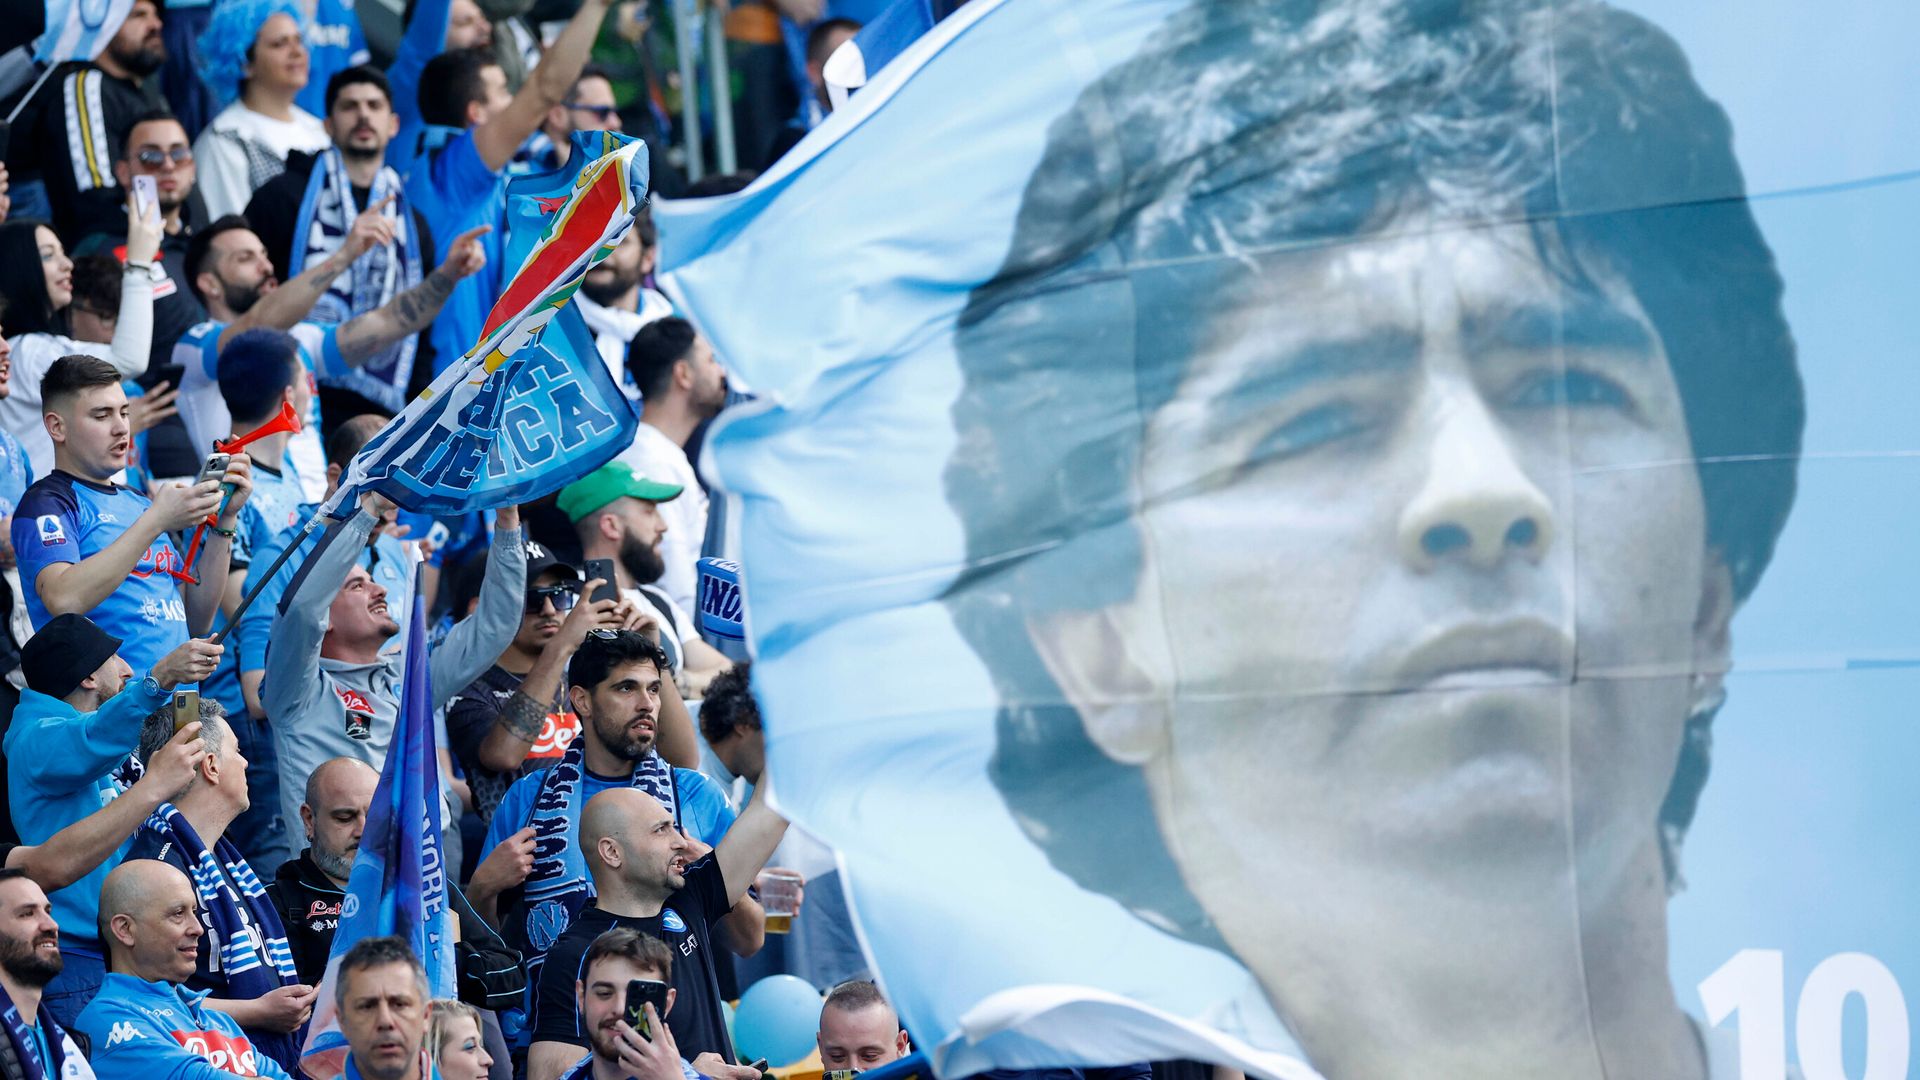 Capello, Del Piero react - Read all about Napoli's title win on Sky Italy